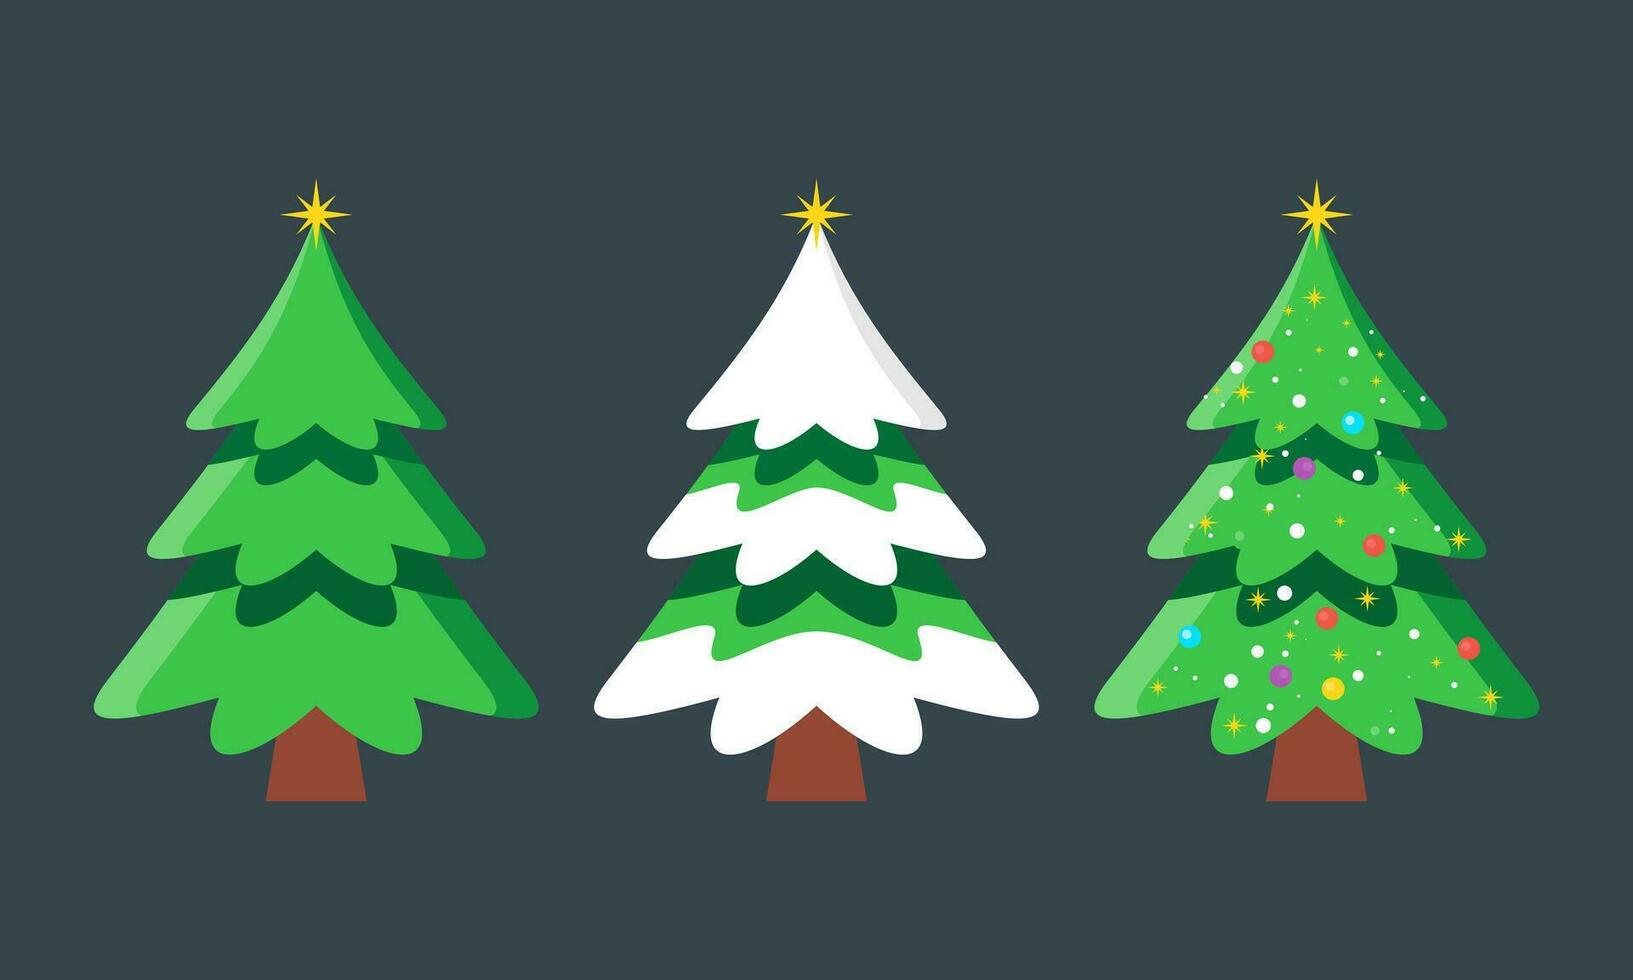 dessin animé décoré Noël des arbres collection avec des balles, étoiles, et guirlande sapin des arbres illustration vecteur